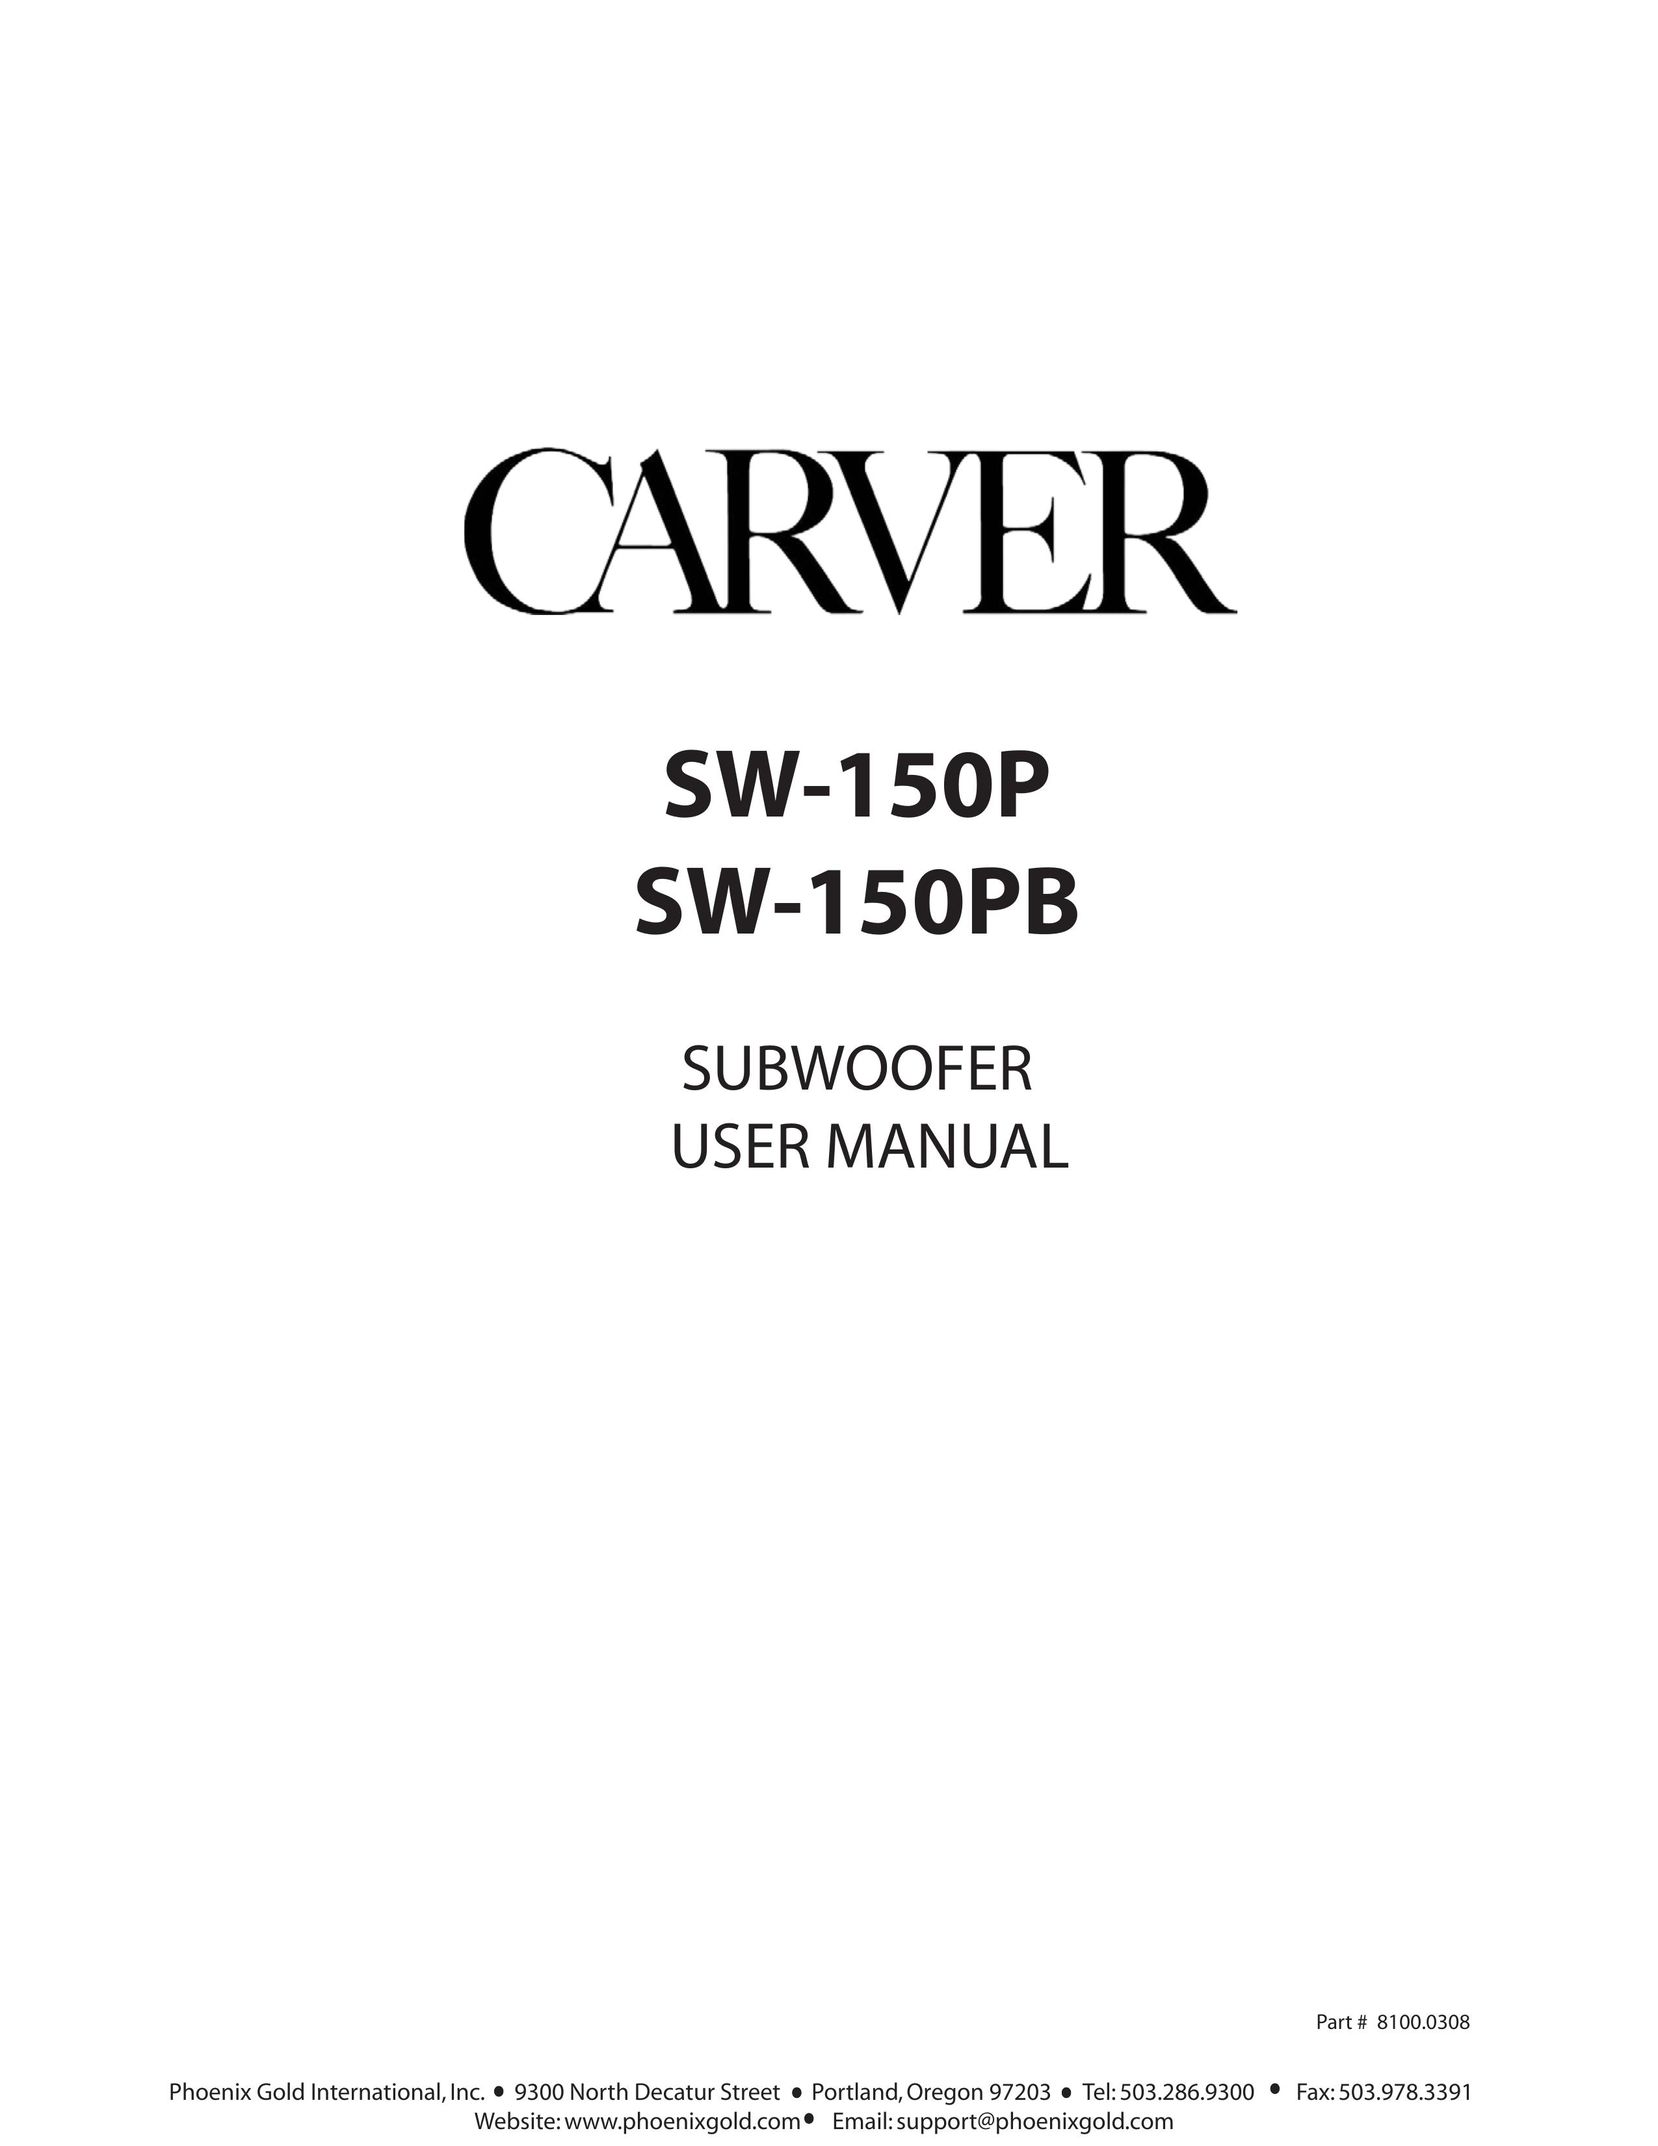 Carver sw-150pb Speaker System User Manual